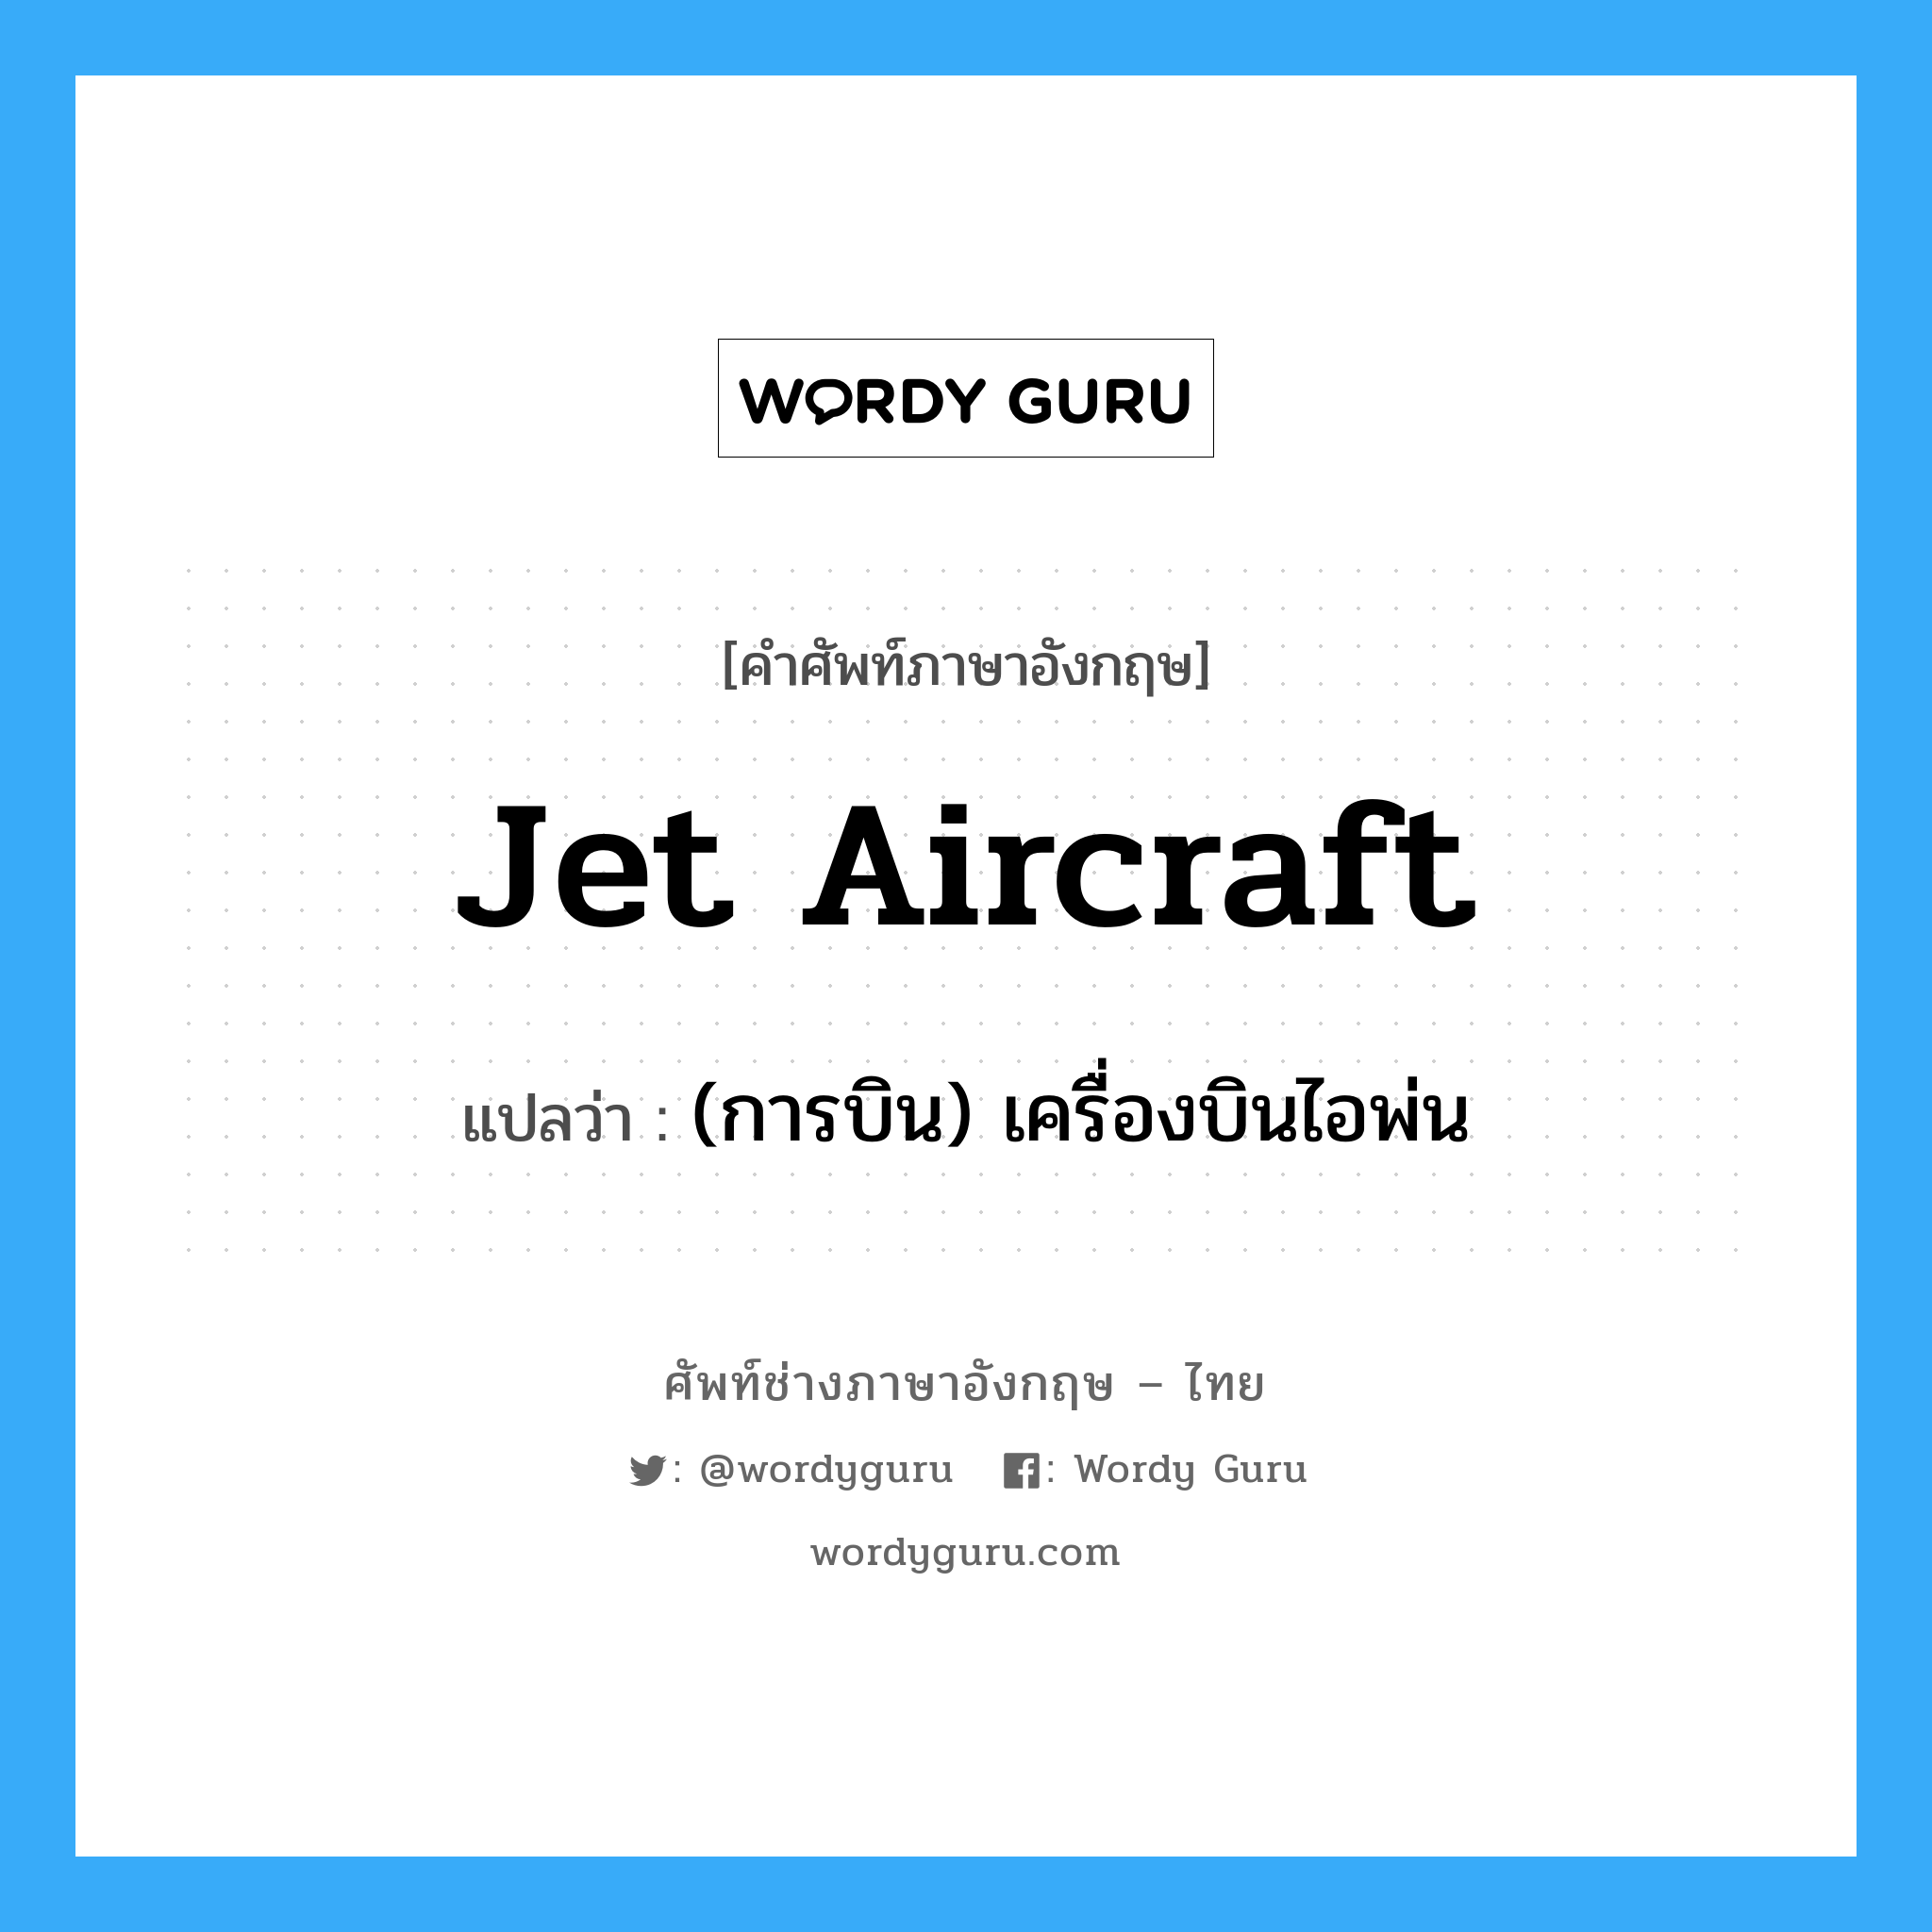 (การบิน) เครื่องบินไอพ่น ภาษาอังกฤษ?, คำศัพท์ช่างภาษาอังกฤษ - ไทย (การบิน) เครื่องบินไอพ่น คำศัพท์ภาษาอังกฤษ (การบิน) เครื่องบินไอพ่น แปลว่า jet aircraft